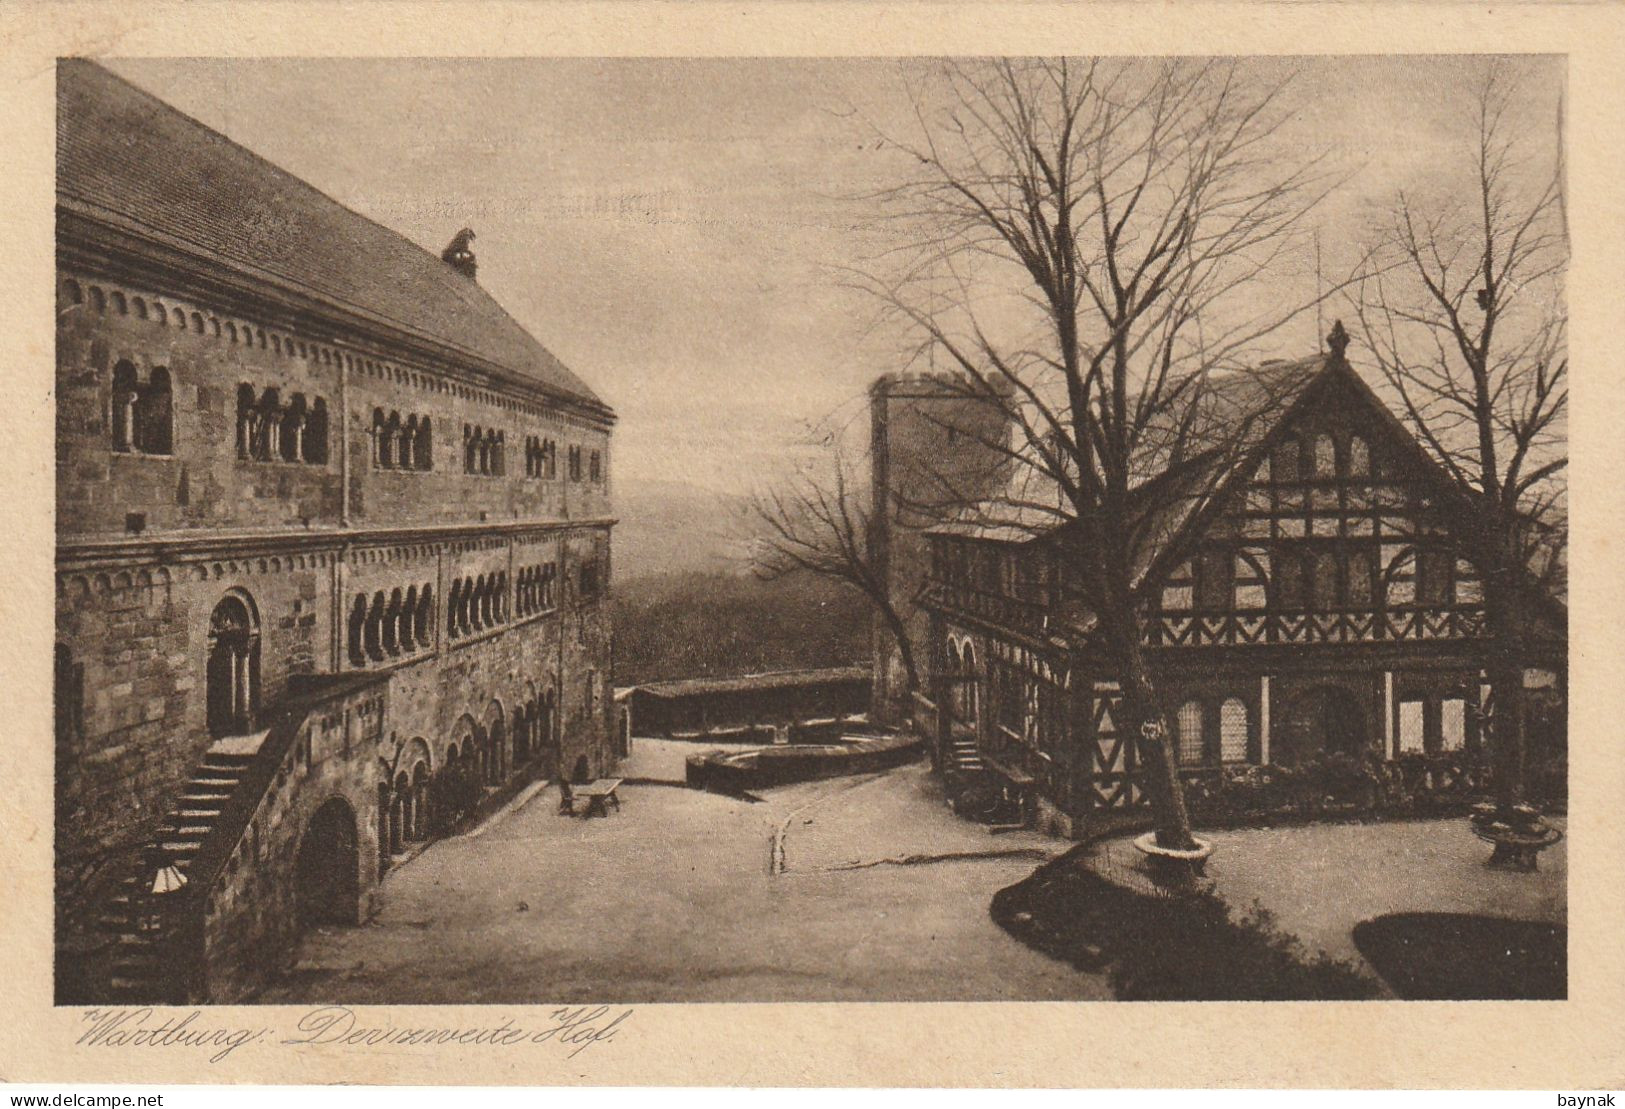 DE404  --   WARTBURG  --  DER ZWEITE HOF   --   ORIGINAL GRAVURE KARTE   --  1924 - Eisenach